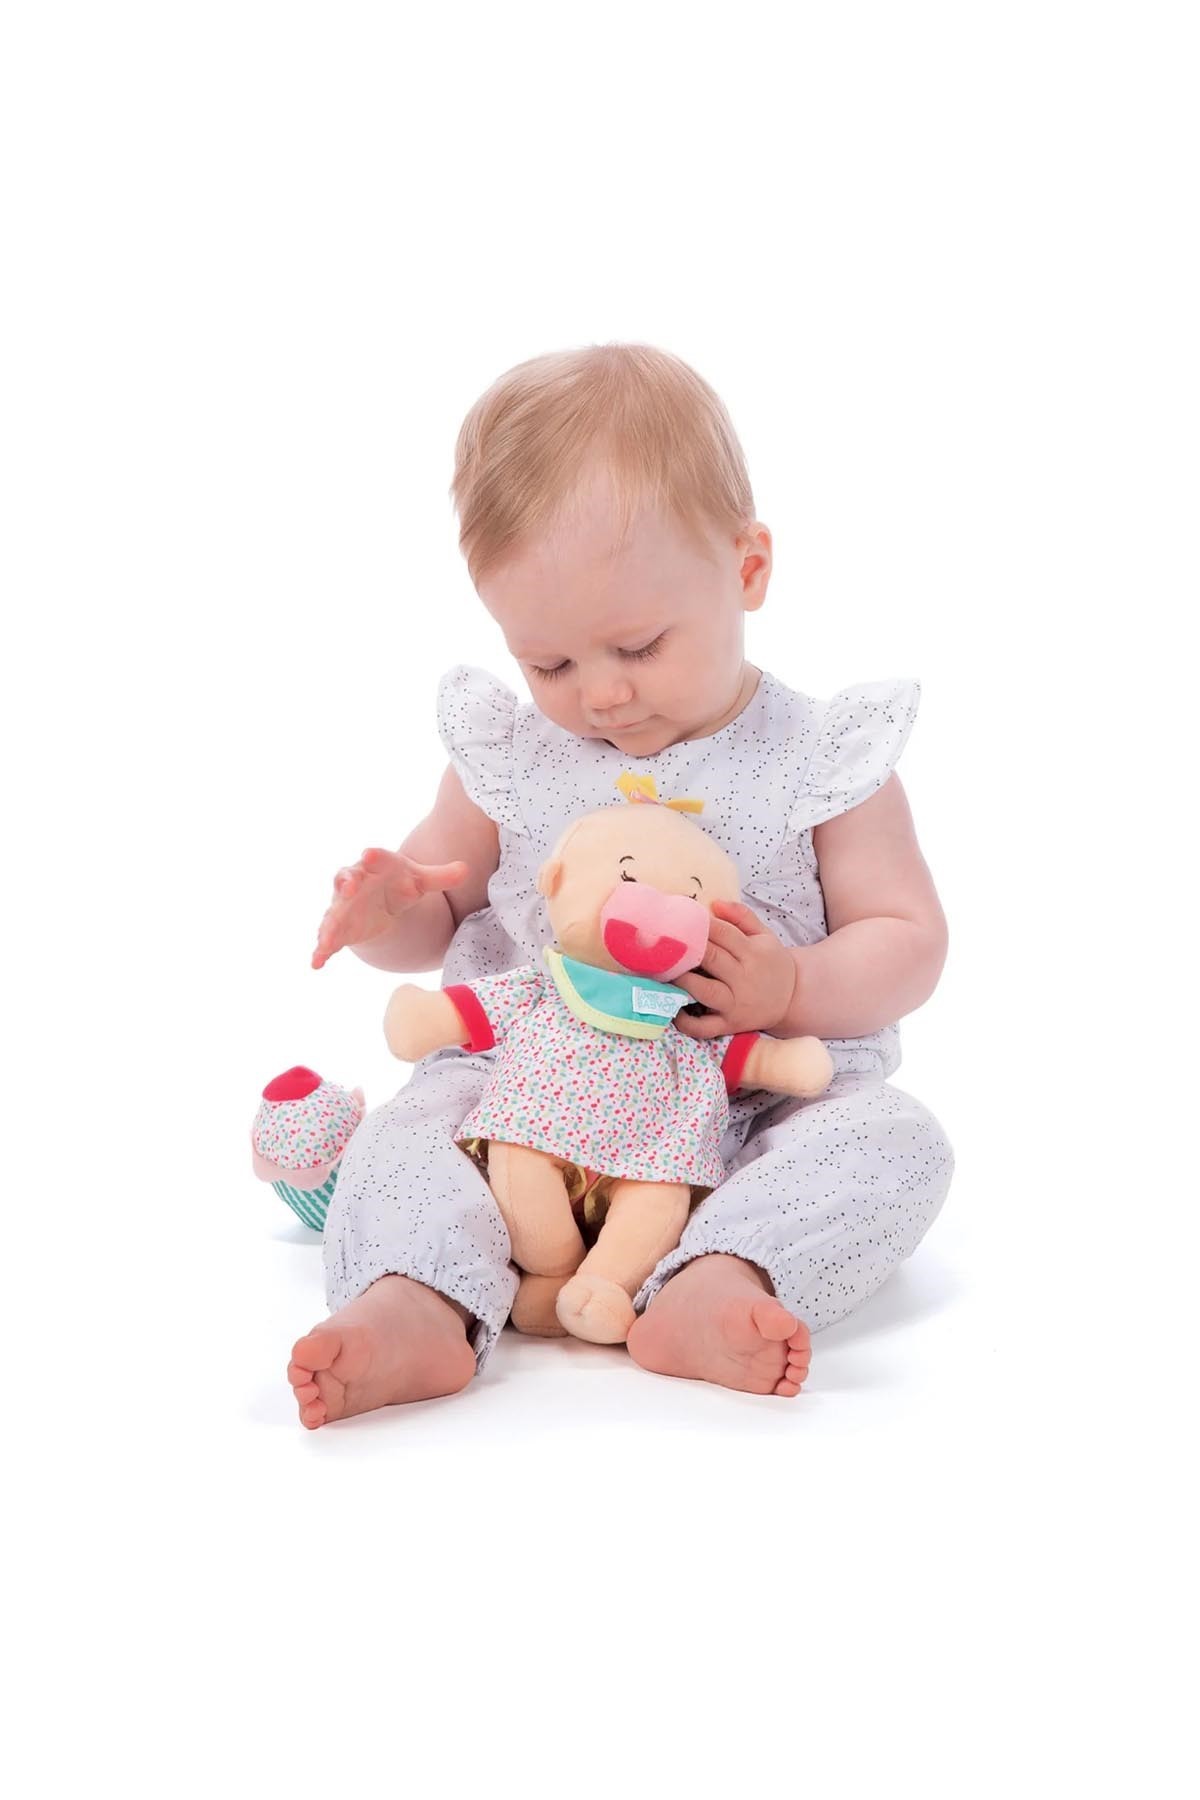 Manhattan Toy Wee Baby Stella Oyuncak Bebek Doğum Günü